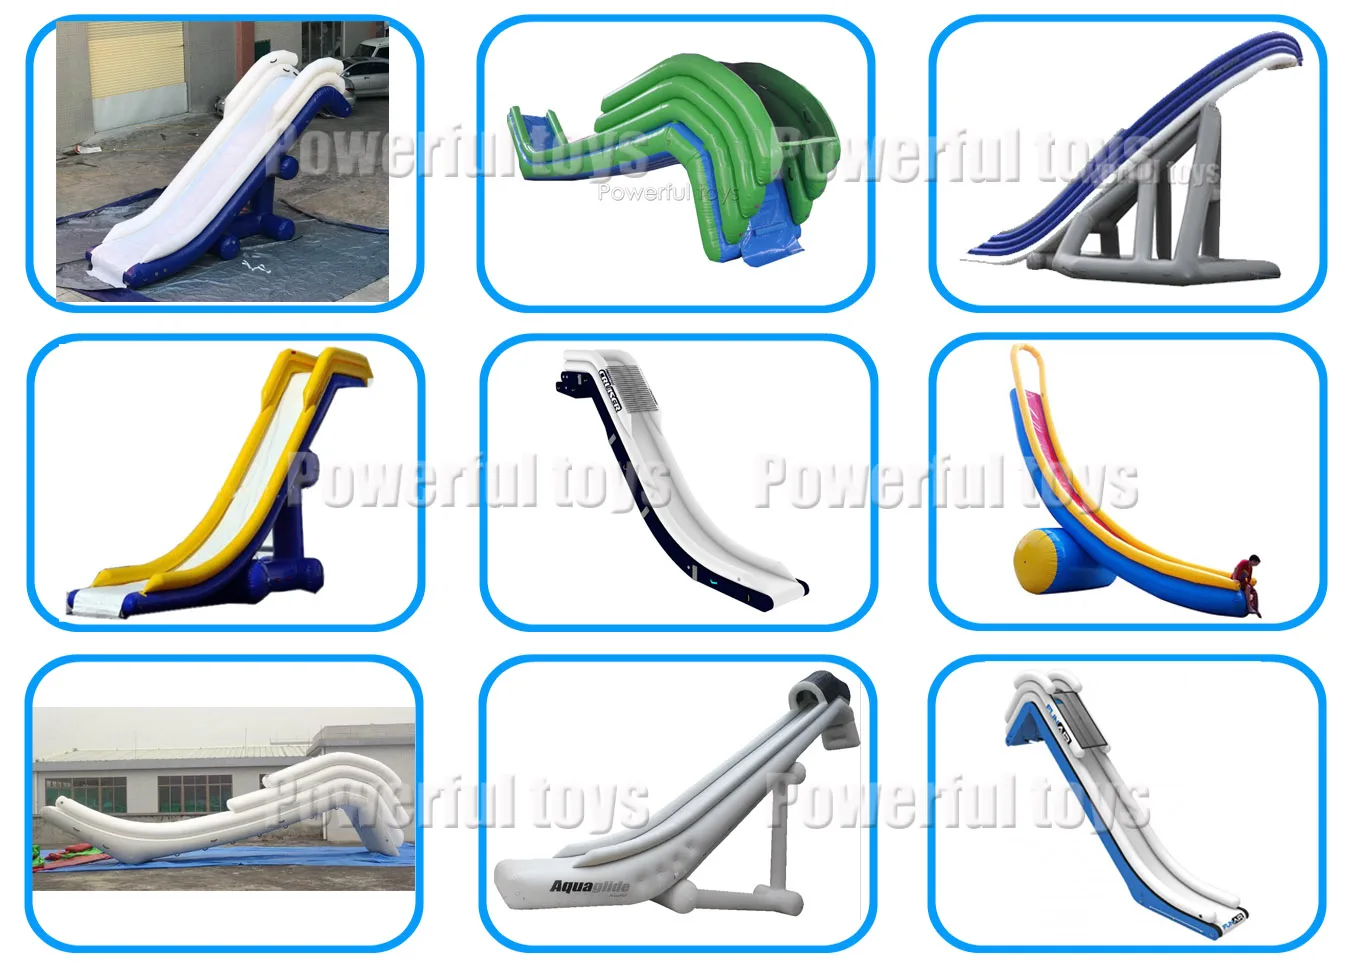 Customized size adjustable yacht slide inflatable yacht slide water slide for sale